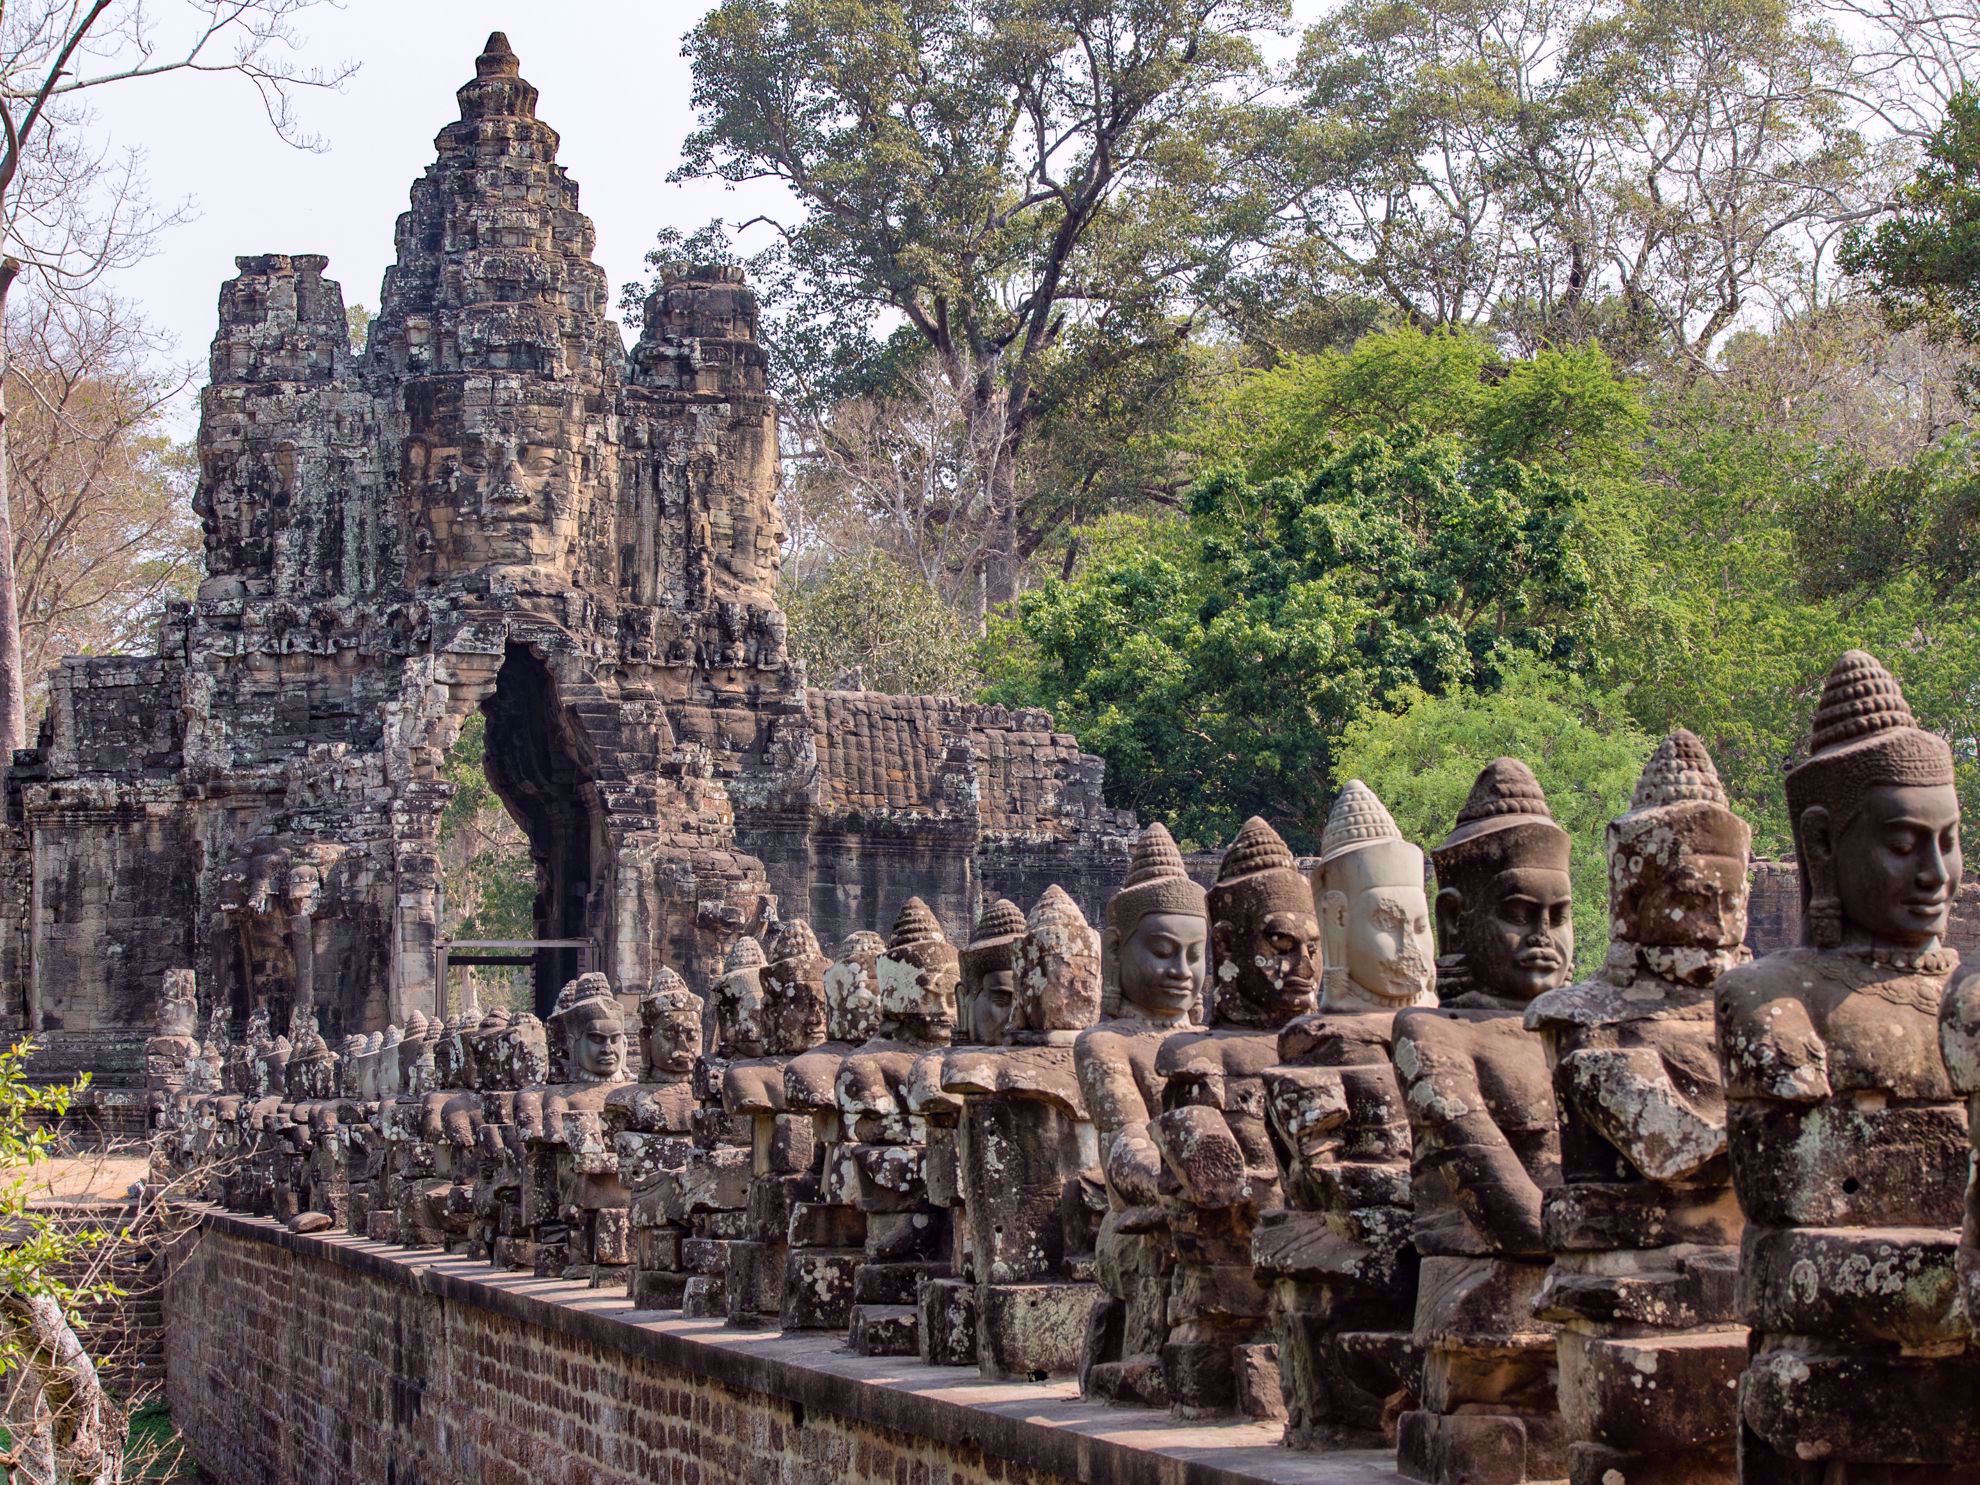 Temple sculptures